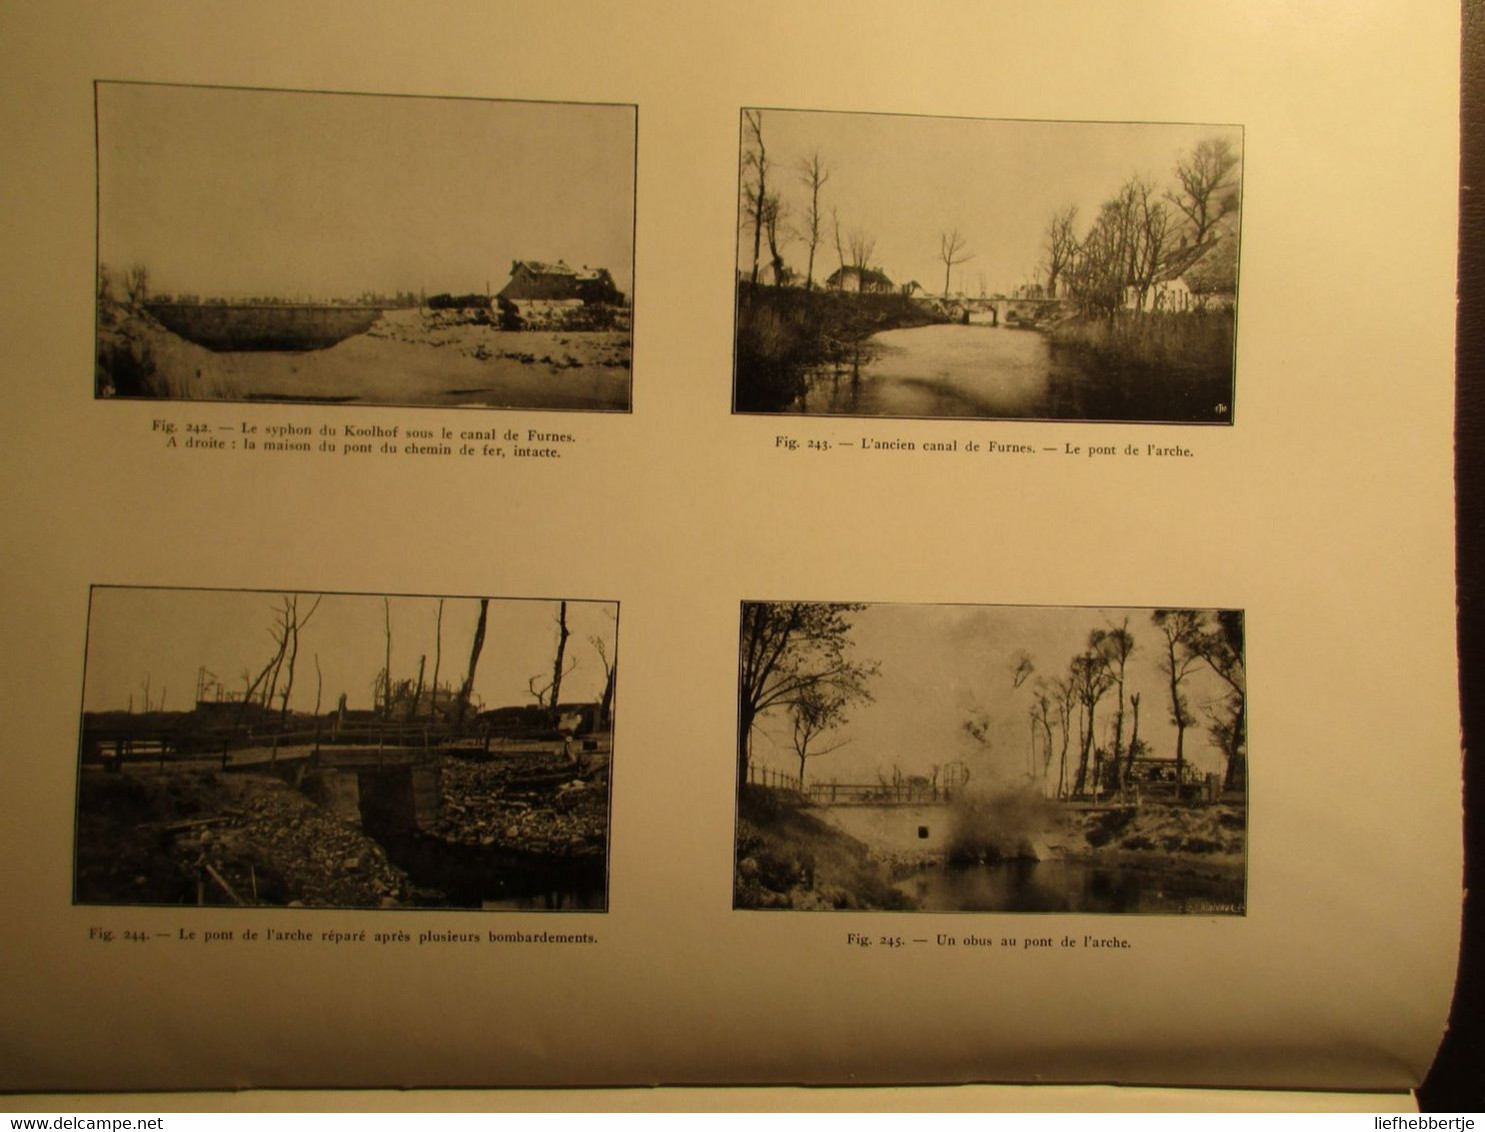 Nieuport 1914-1918 - Les inondations de l'Yser et ... Génie Belge - 1922 - overstroming Ijzer - door R. Thys